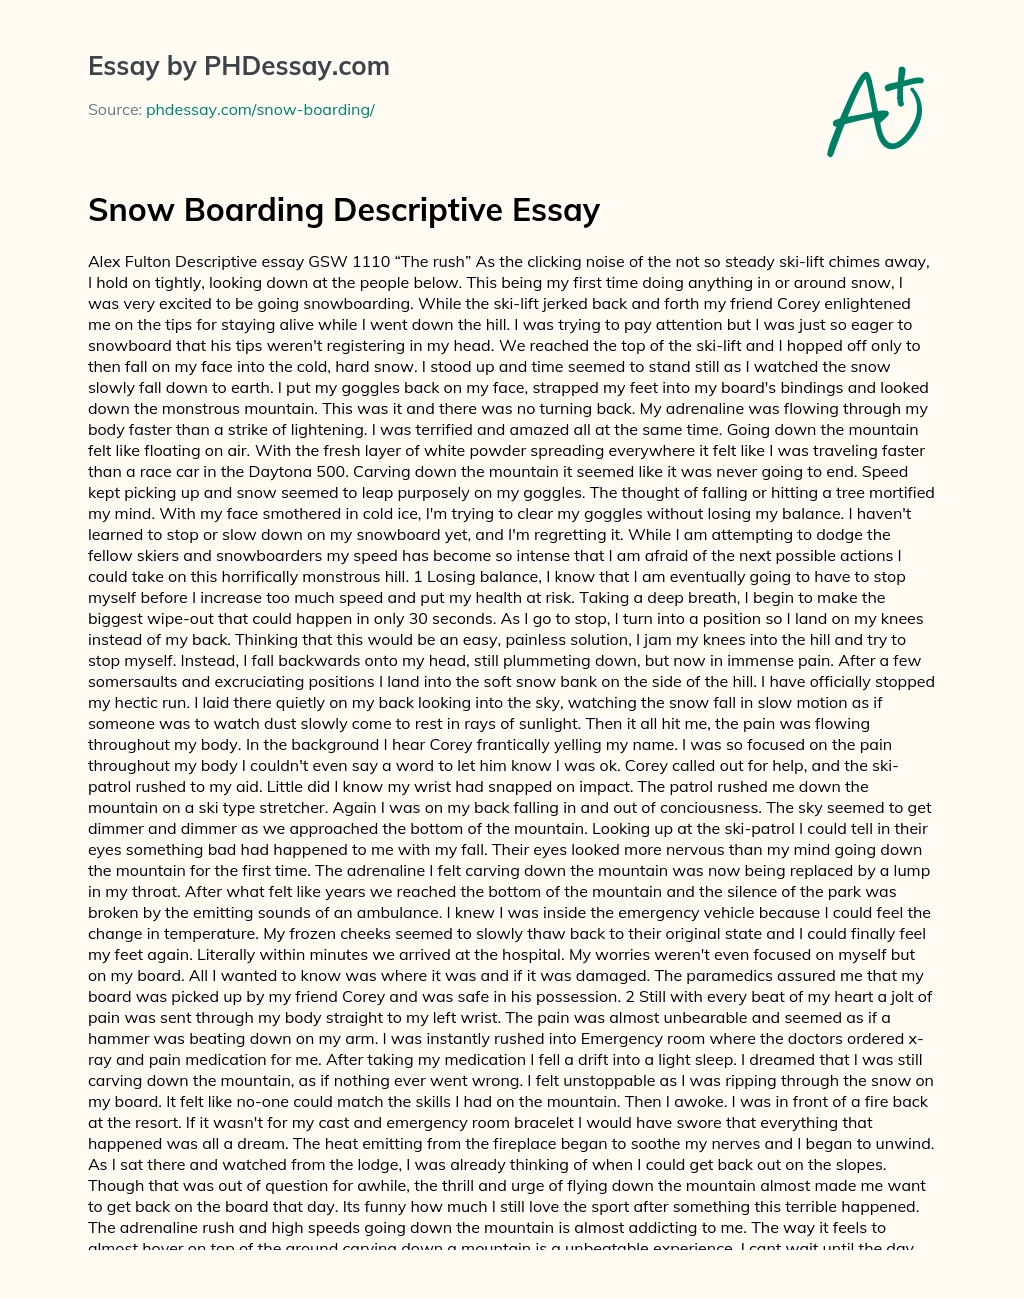 Snow Boarding Descriptive Essay essay